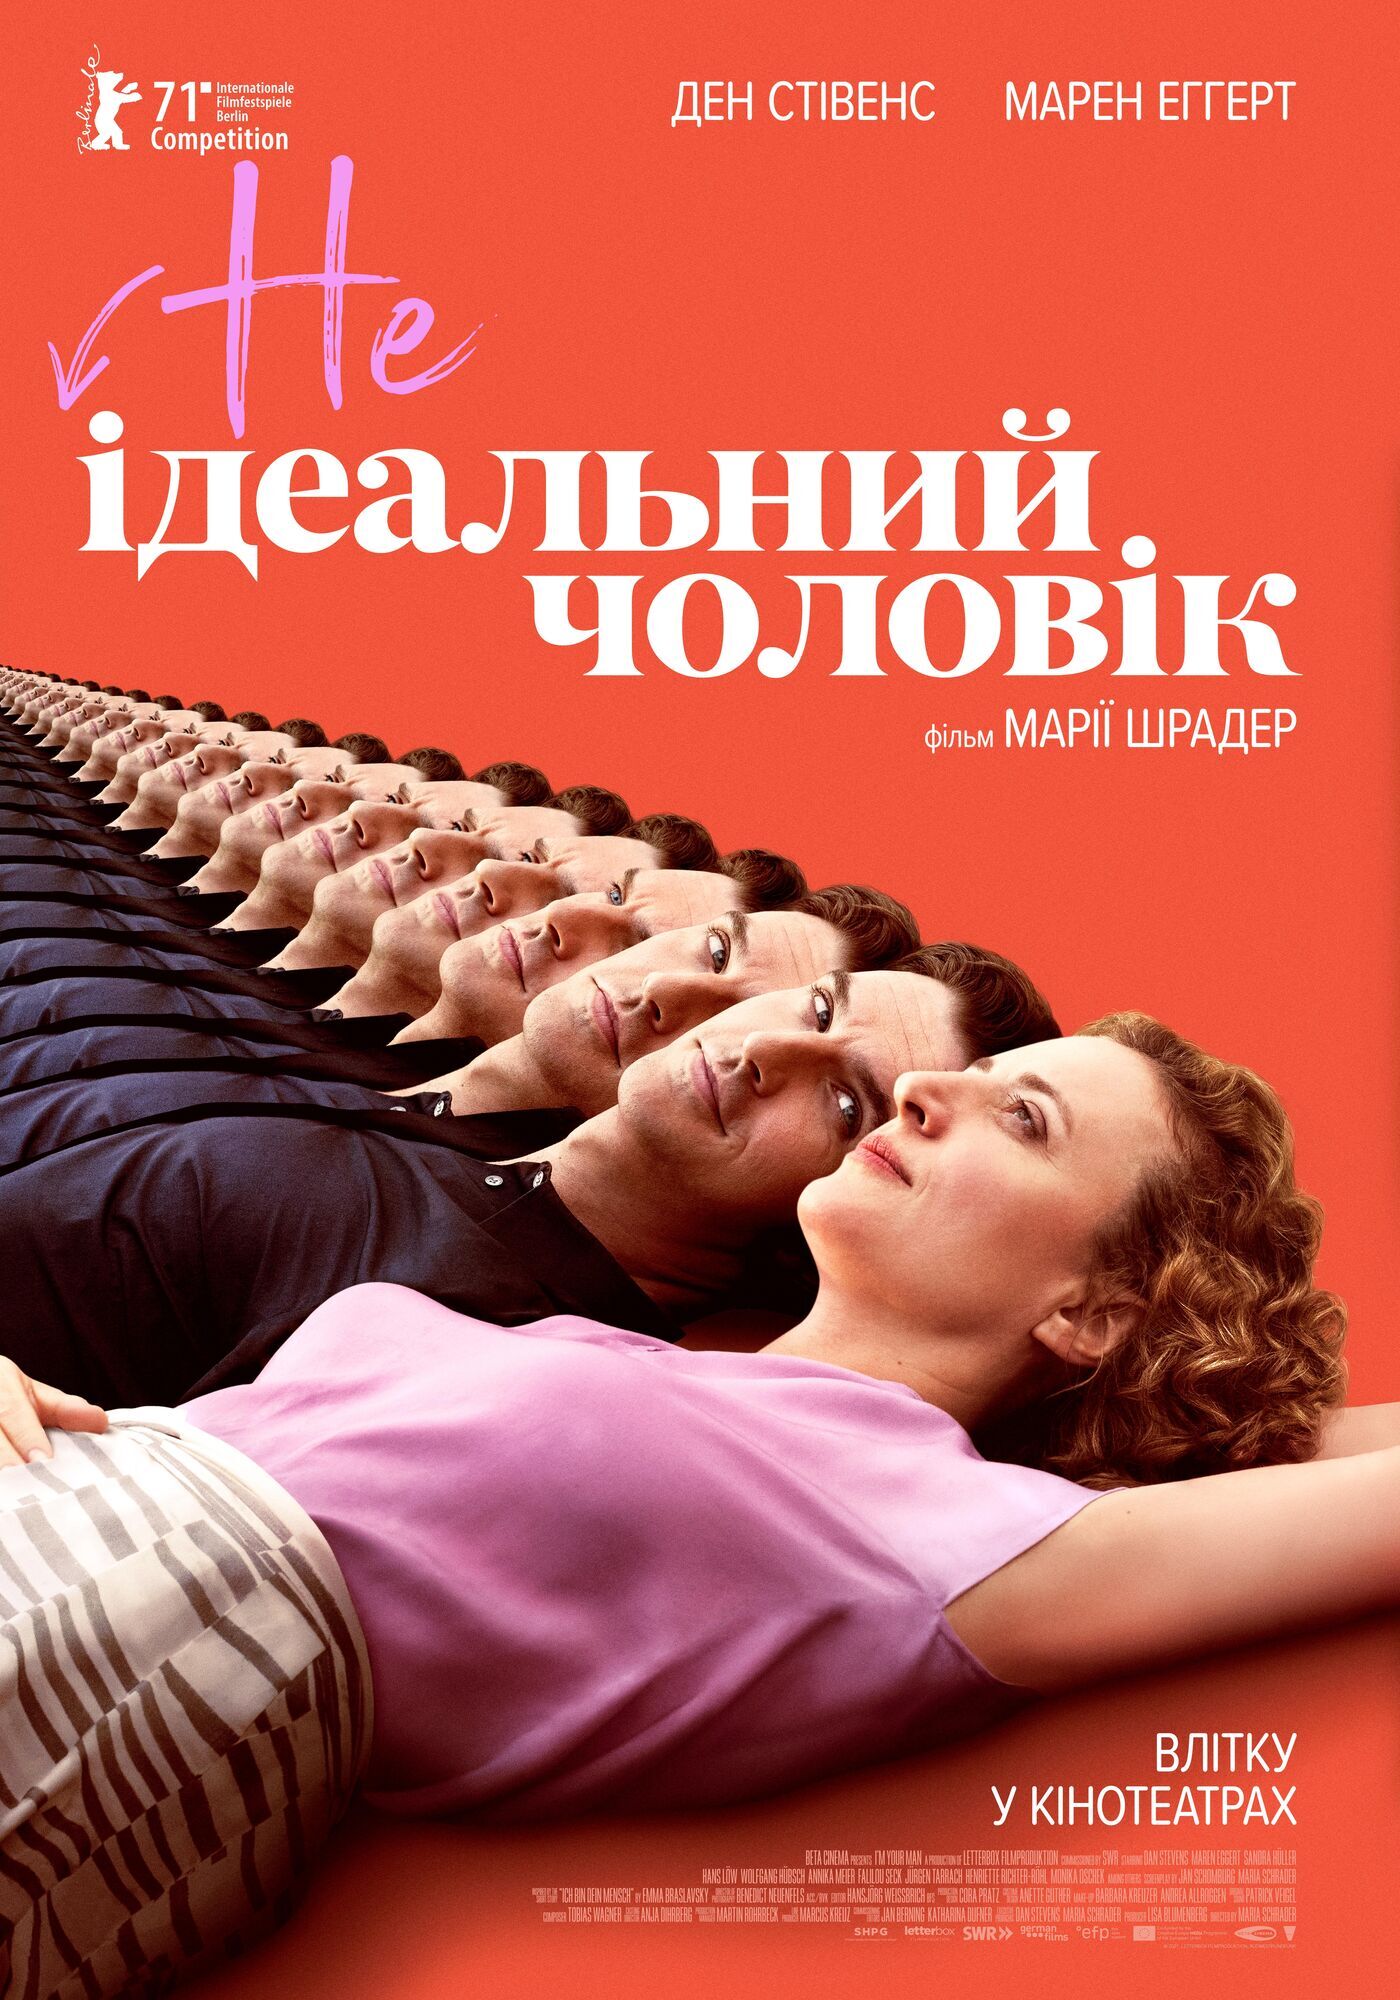 "НЕидеальный мужчина" выйдет в украинских кинотеатрах с 5 августа